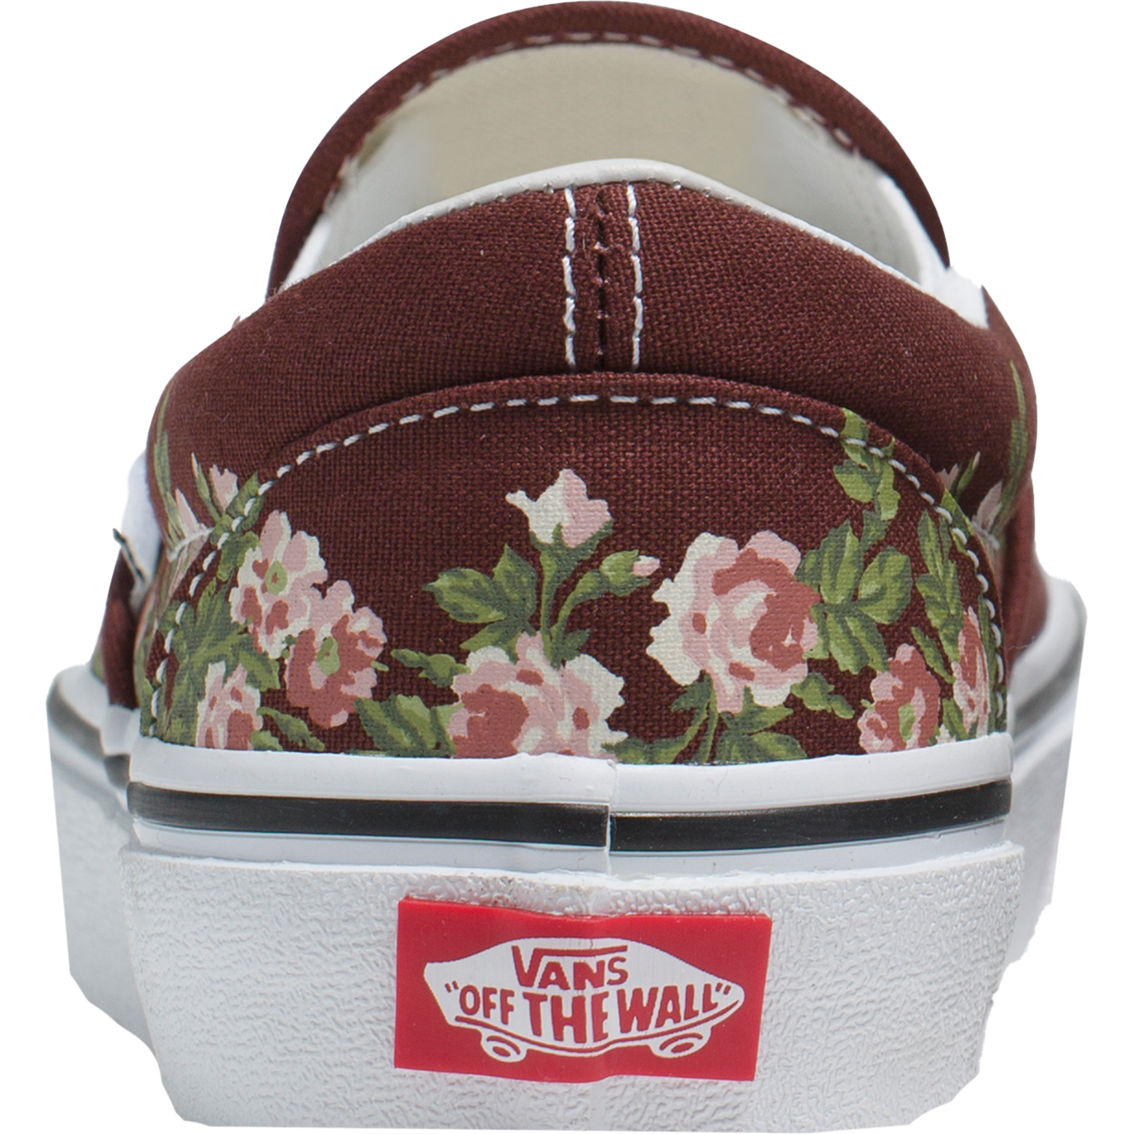 Vans Classic Slip On Wallflower Shoes - Image 4 of 4